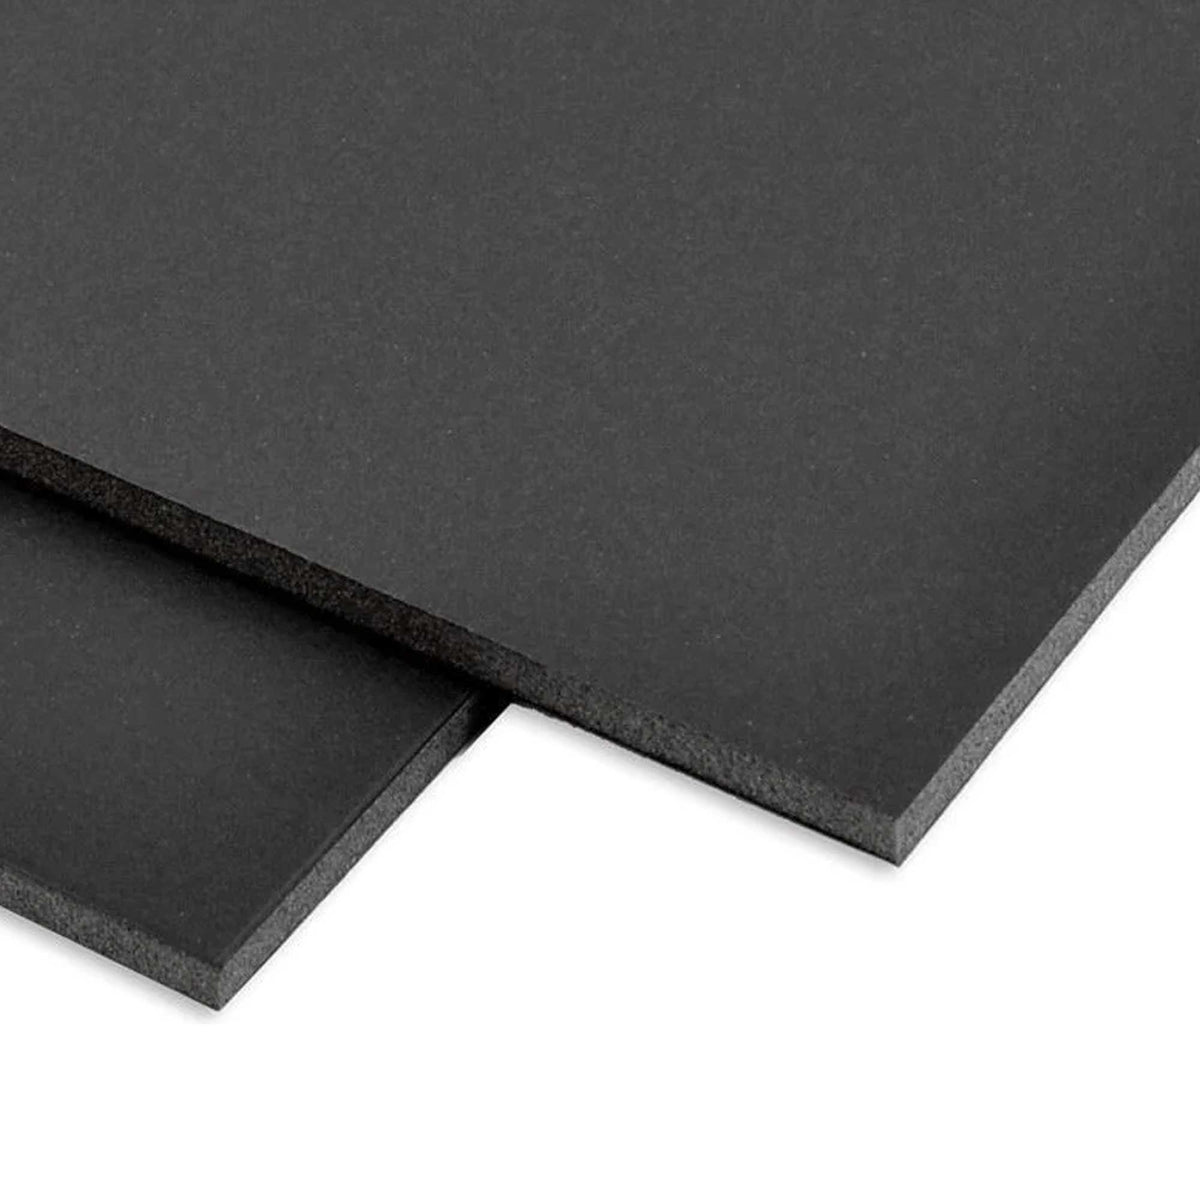 Black Foam Board - 5mm Thick closeup